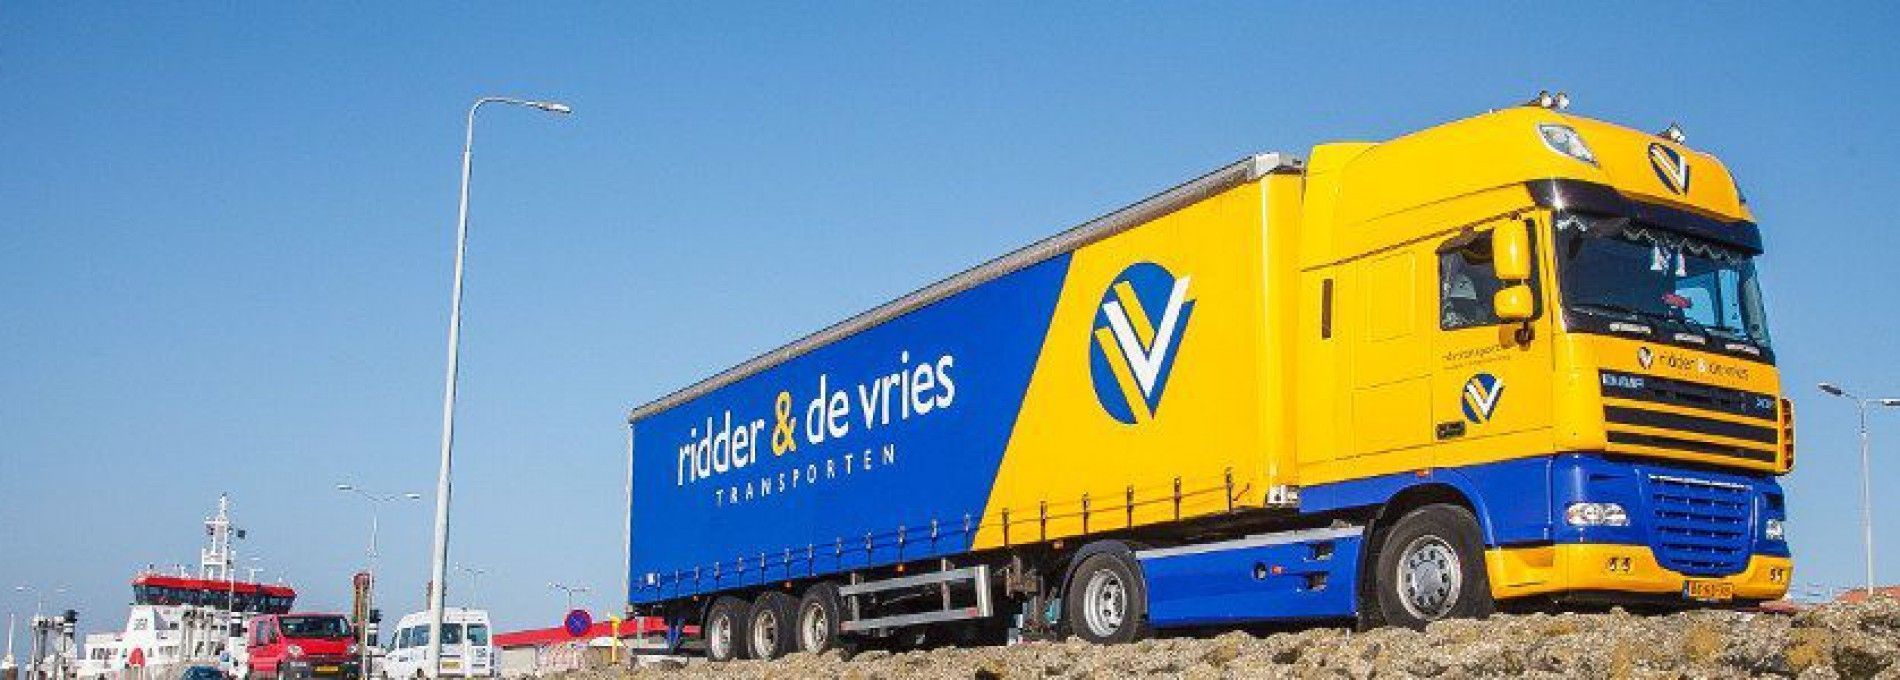 Transportbedrijf Ridder & De Vries Ameland